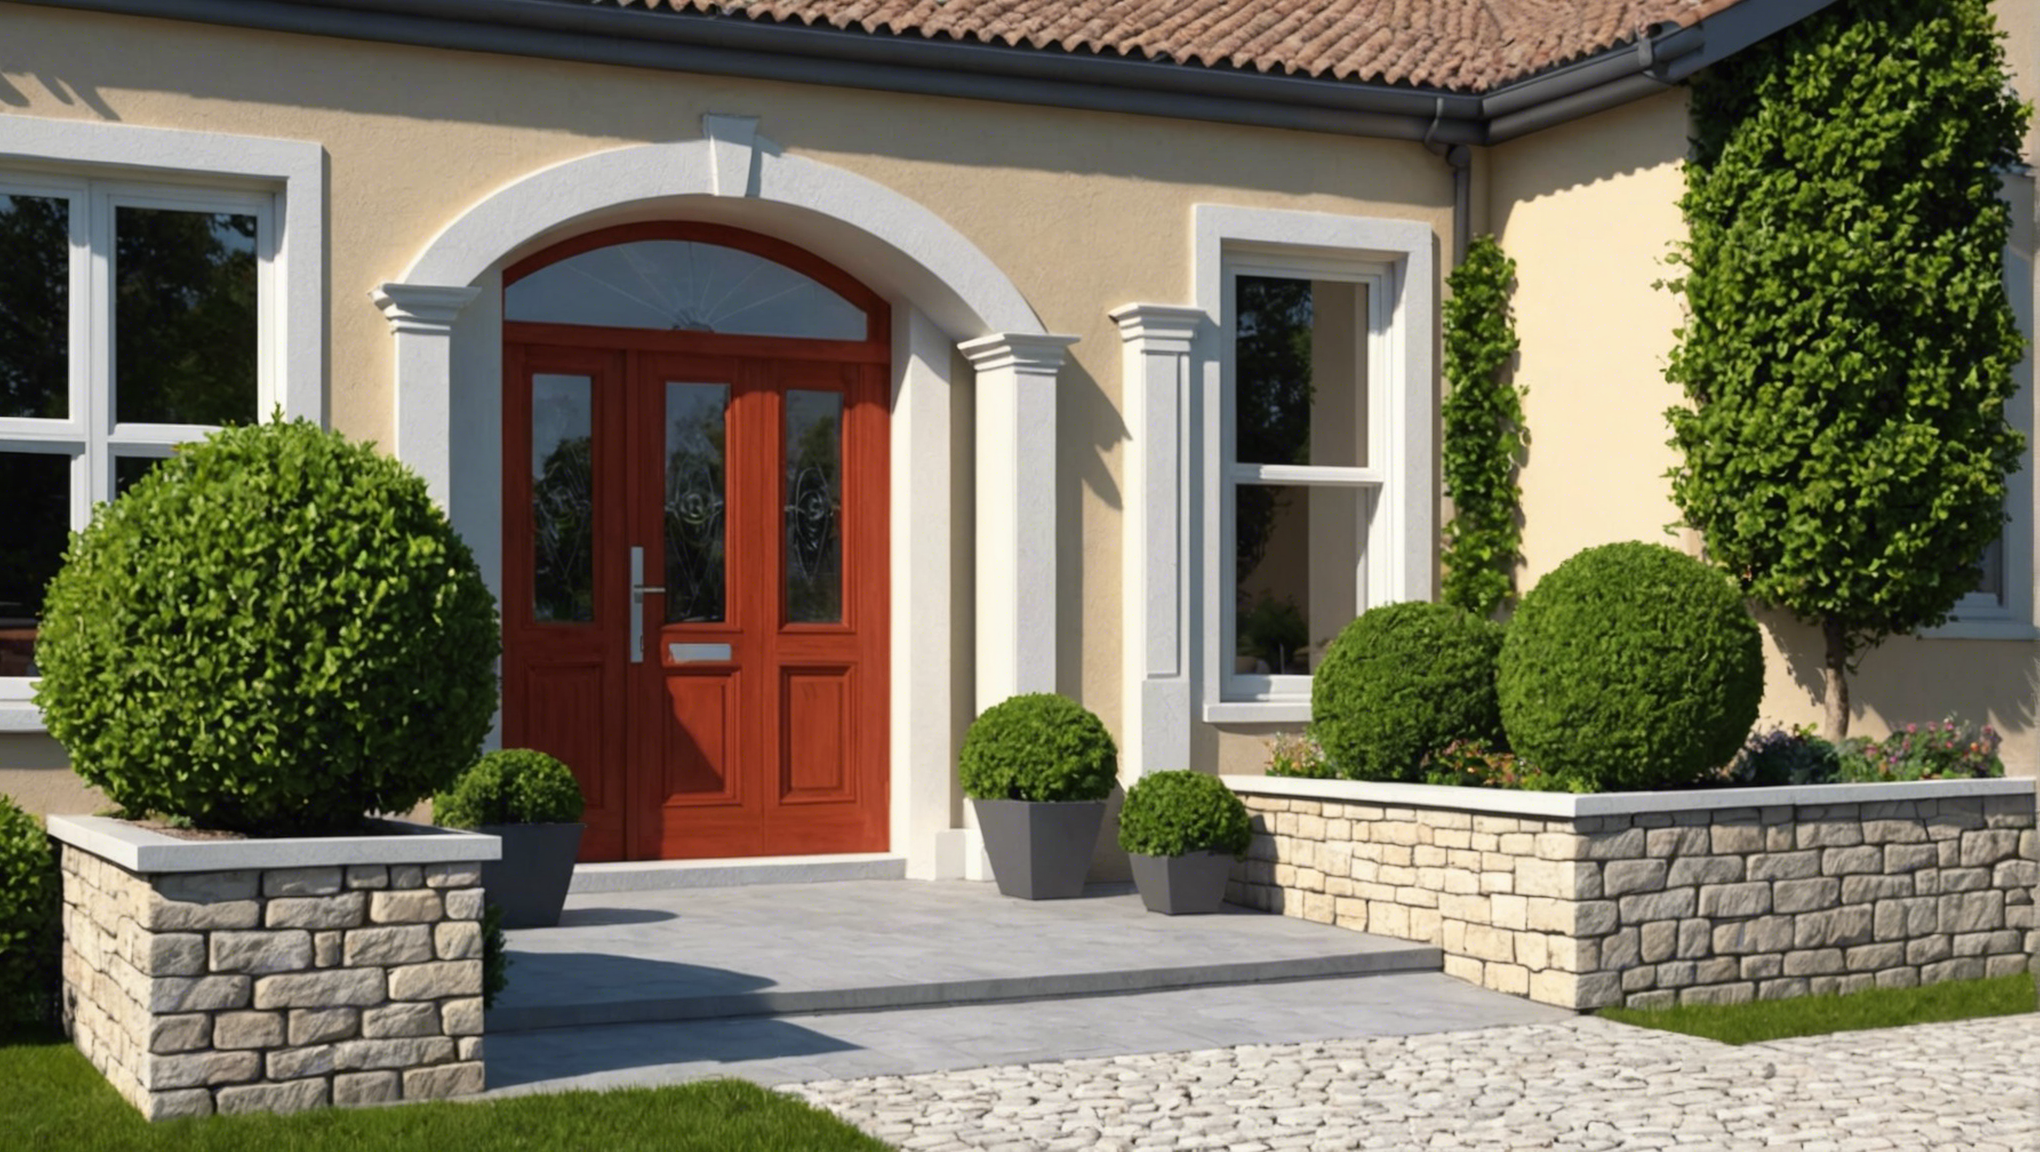 découvrez nos conseils pour choisir la parfaite entrée de portail pour votre maison et donner une touche d'élégance à votre propriété.